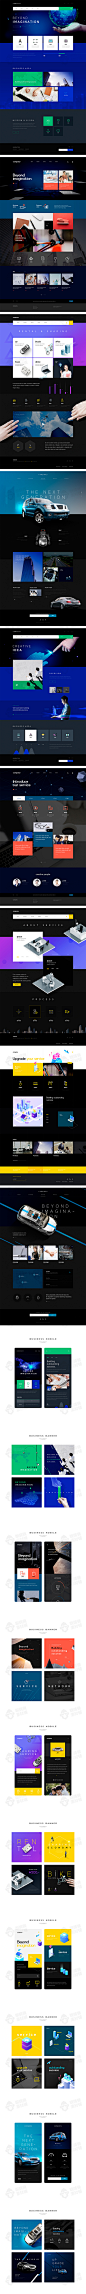 韩国精选5套科技企业网站PC无线端网页bannerpsd设计素材源文件